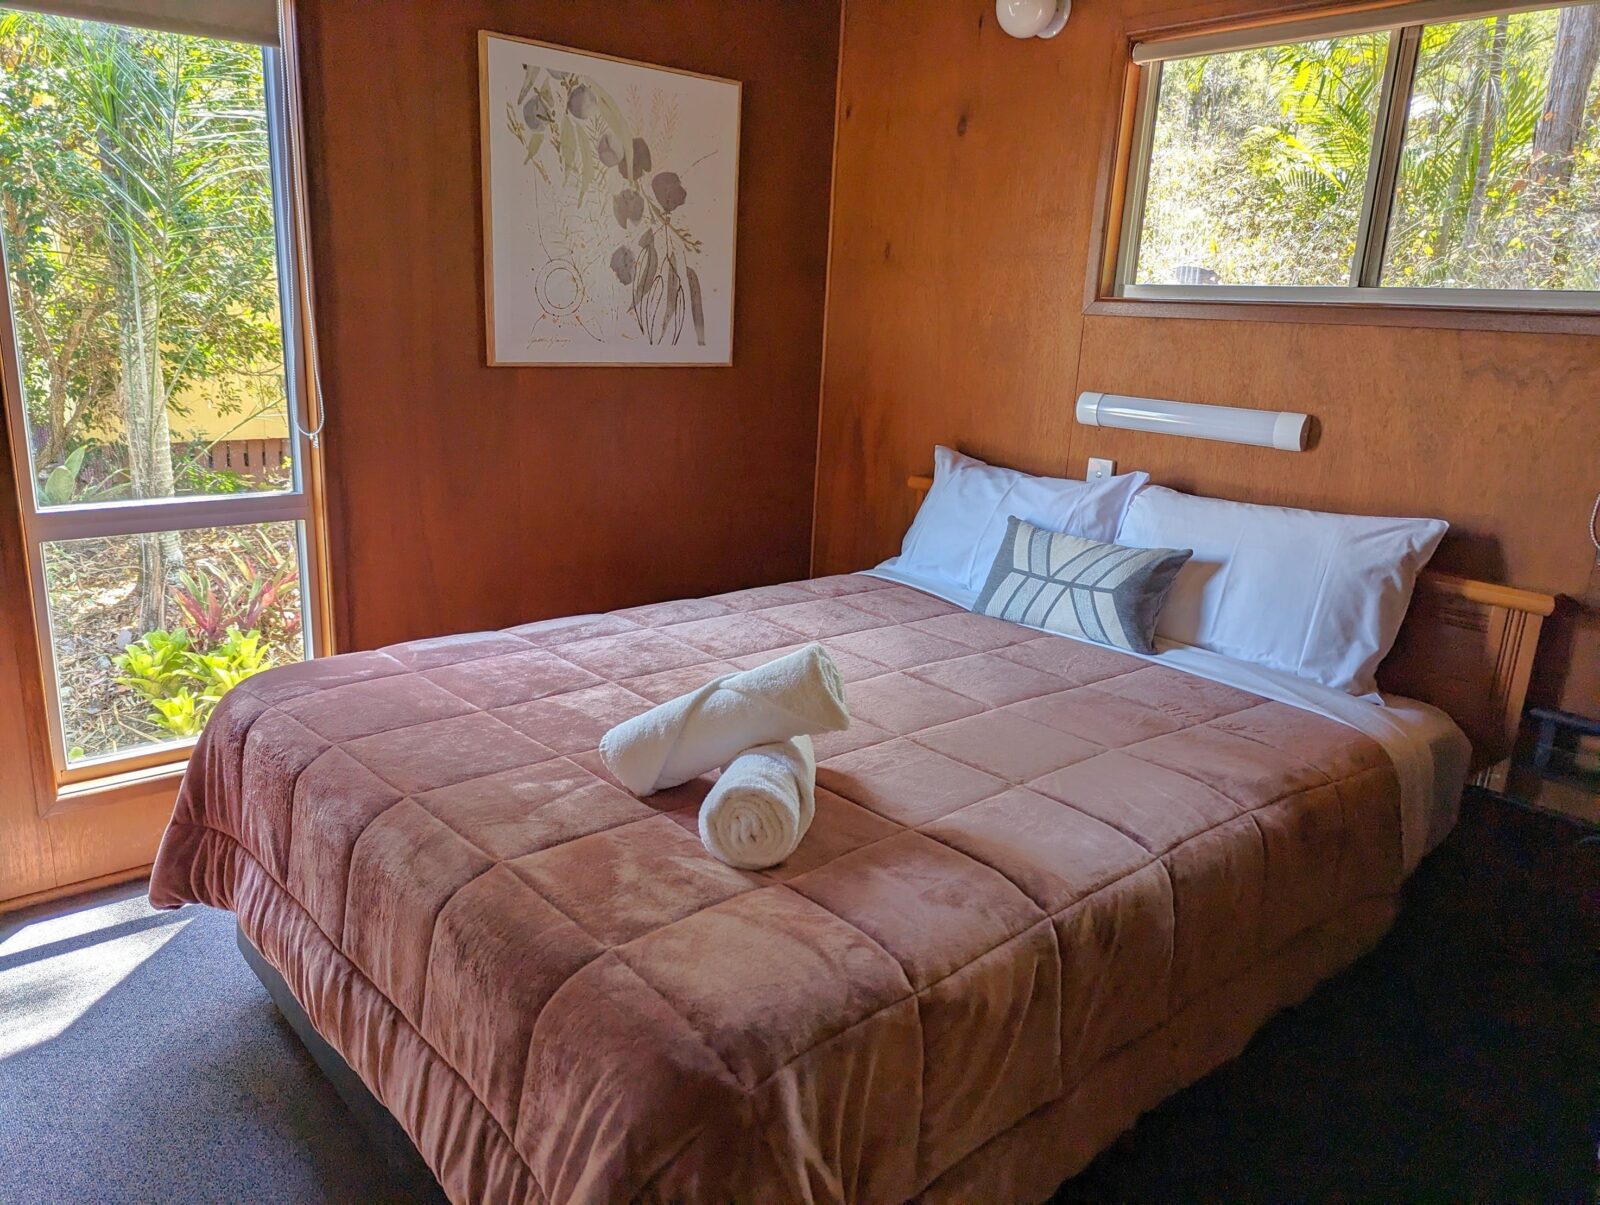 2 bedroom cabin queen bed